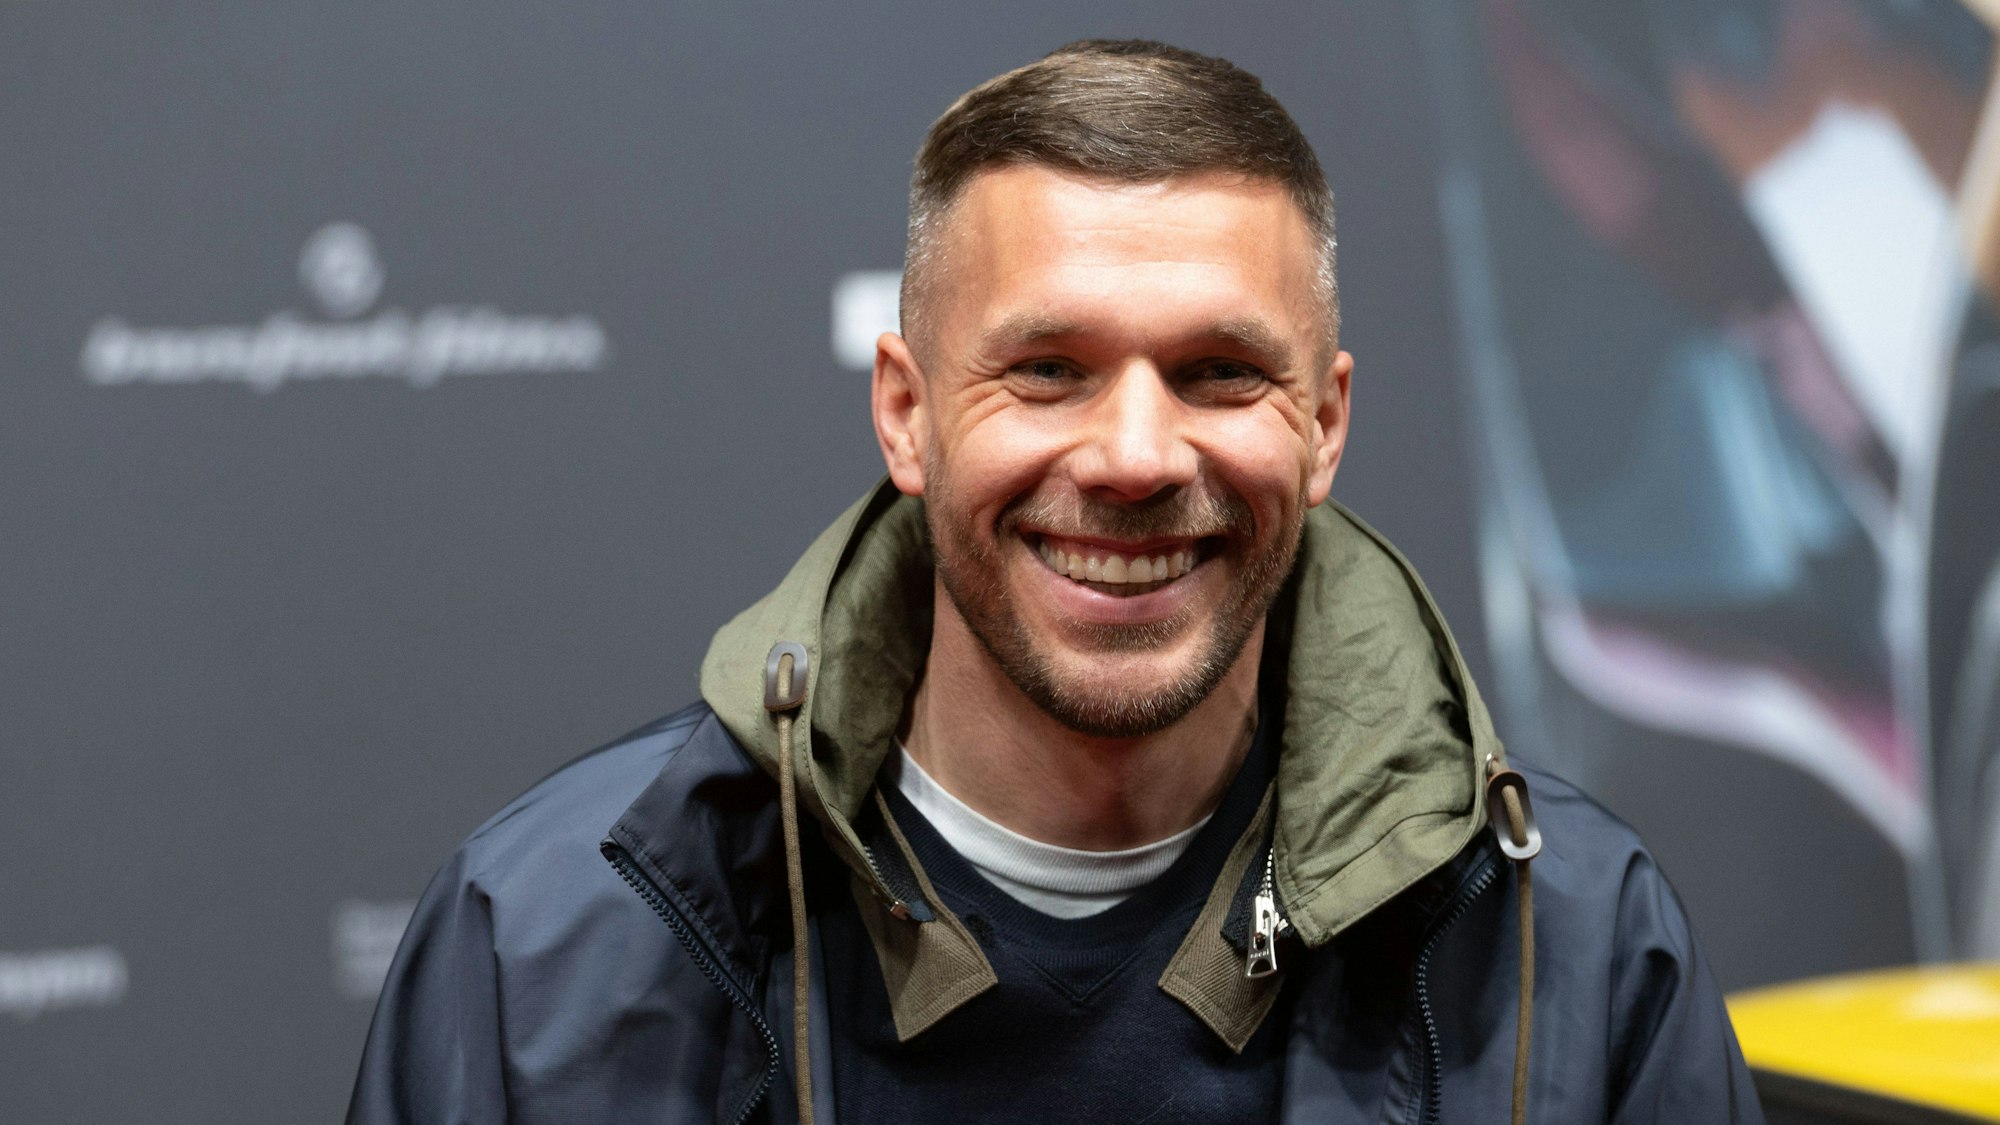 Lukas Podolski lacht bei einer Filmpremiere auf dem Roten Teppich.